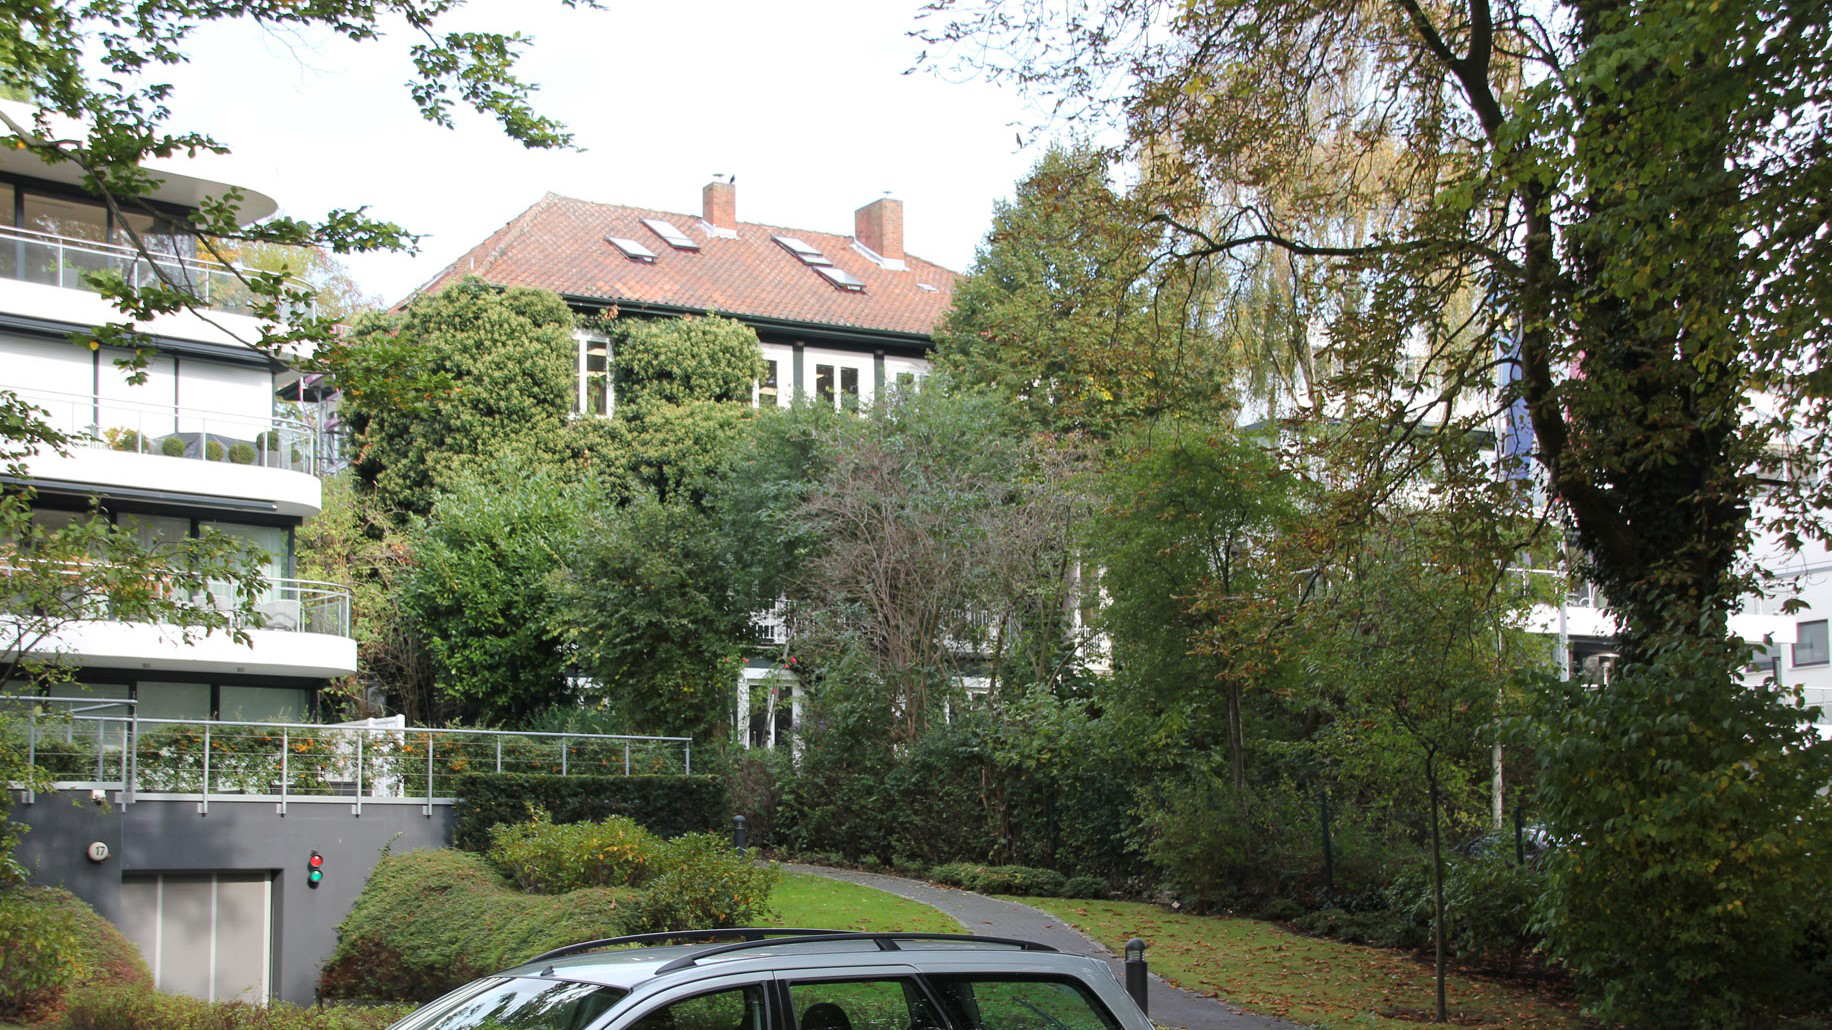 Sanierung der Stadtvilla Lorentzendamm 16 in Kiel, Außenansicht